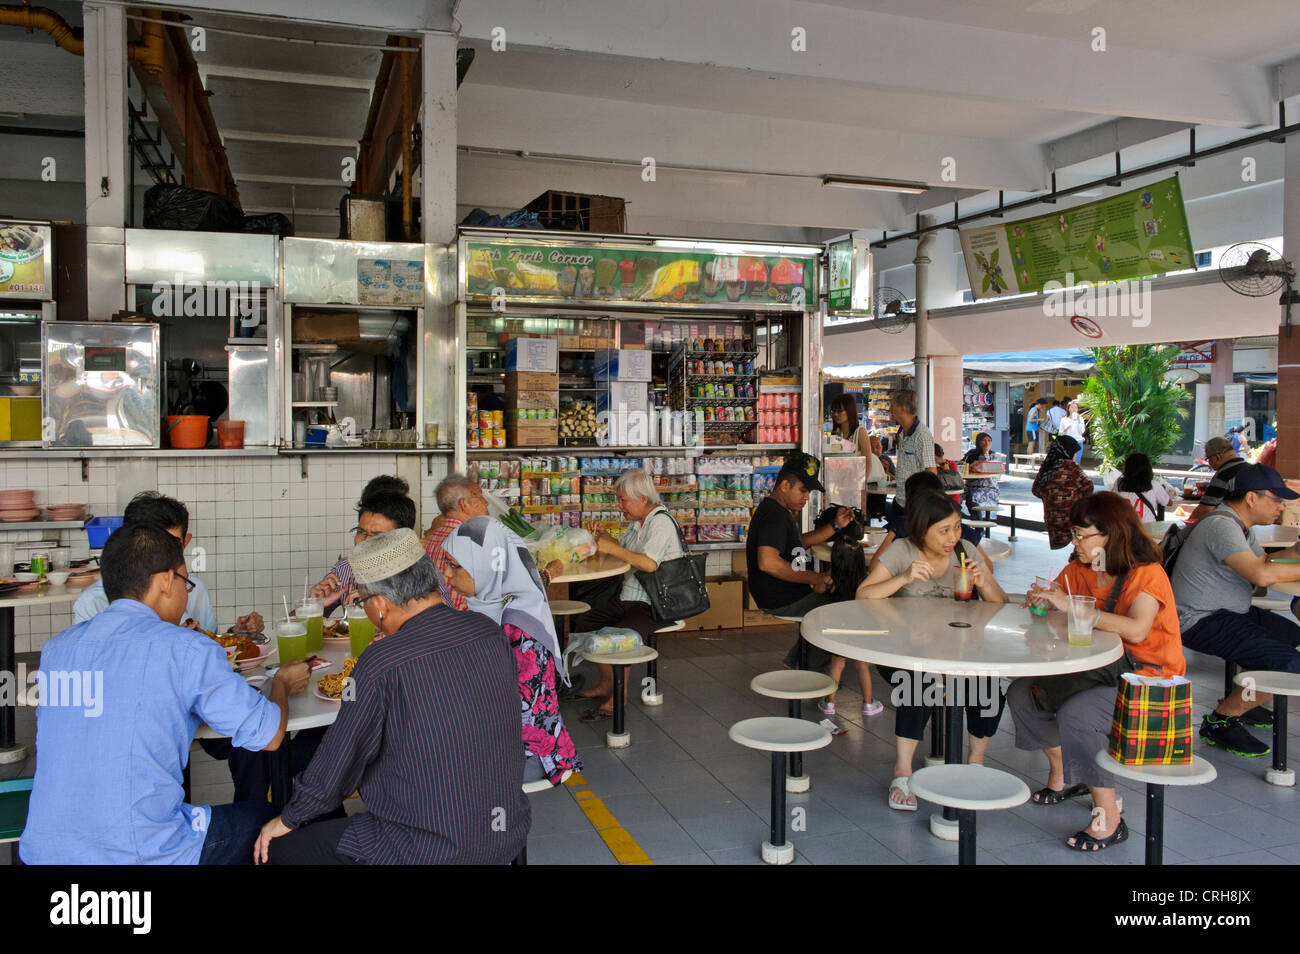 Un restaurant traditionnel avec un coin salon avec des dîners, de restauration, de Singapour. Banque D'Images